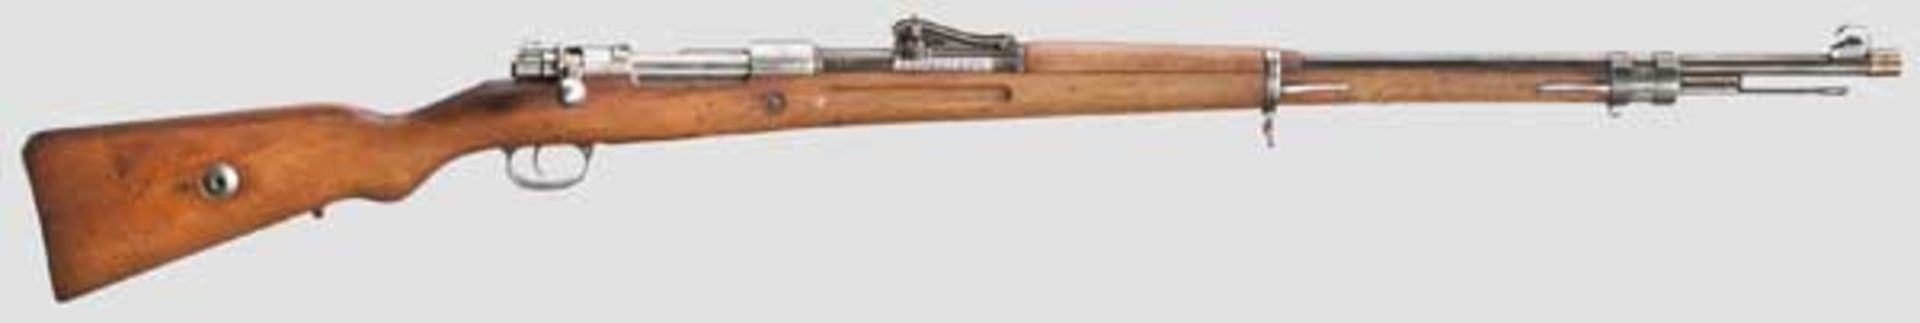 Gewehr 98, DWM 1915 Kal. 8 x 57, Nr. 2348c. Nummerngleich inkl. Schrauben und Putzstock.